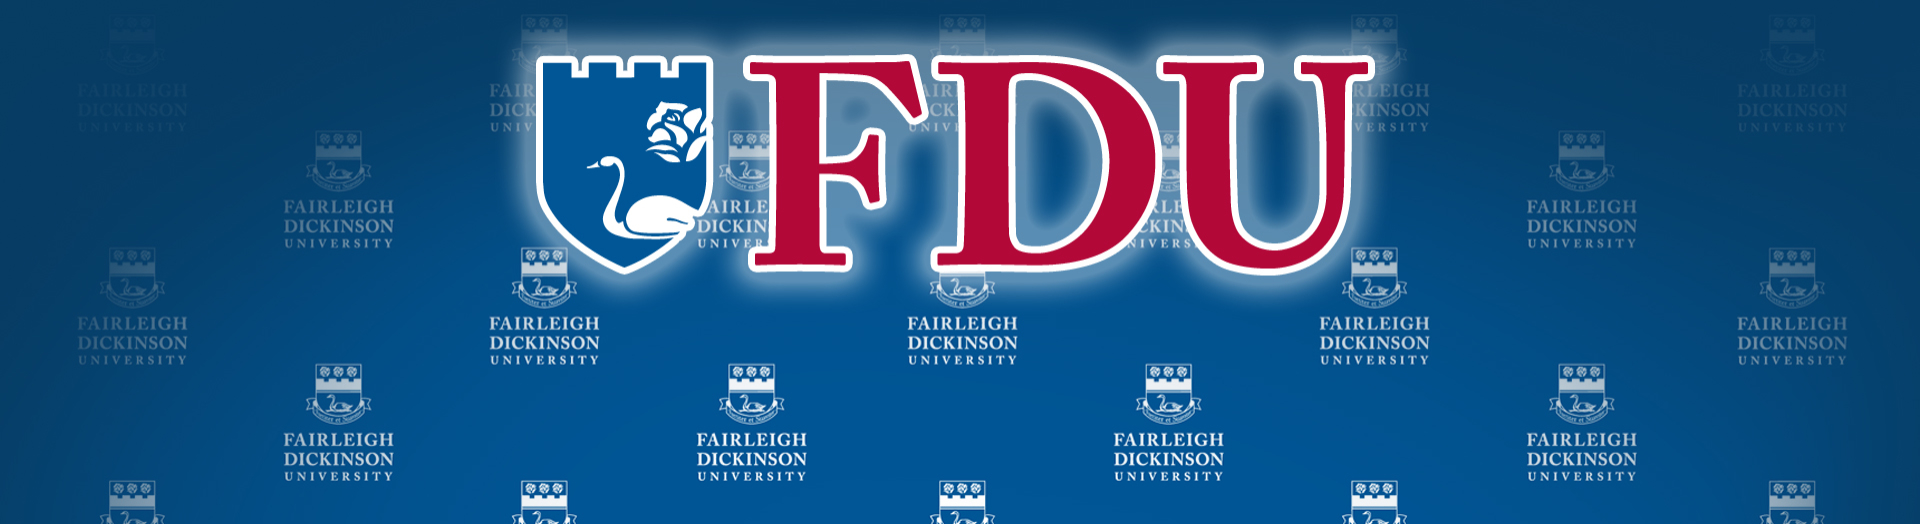 Digital Toolkit Fairleigh Dickinson University